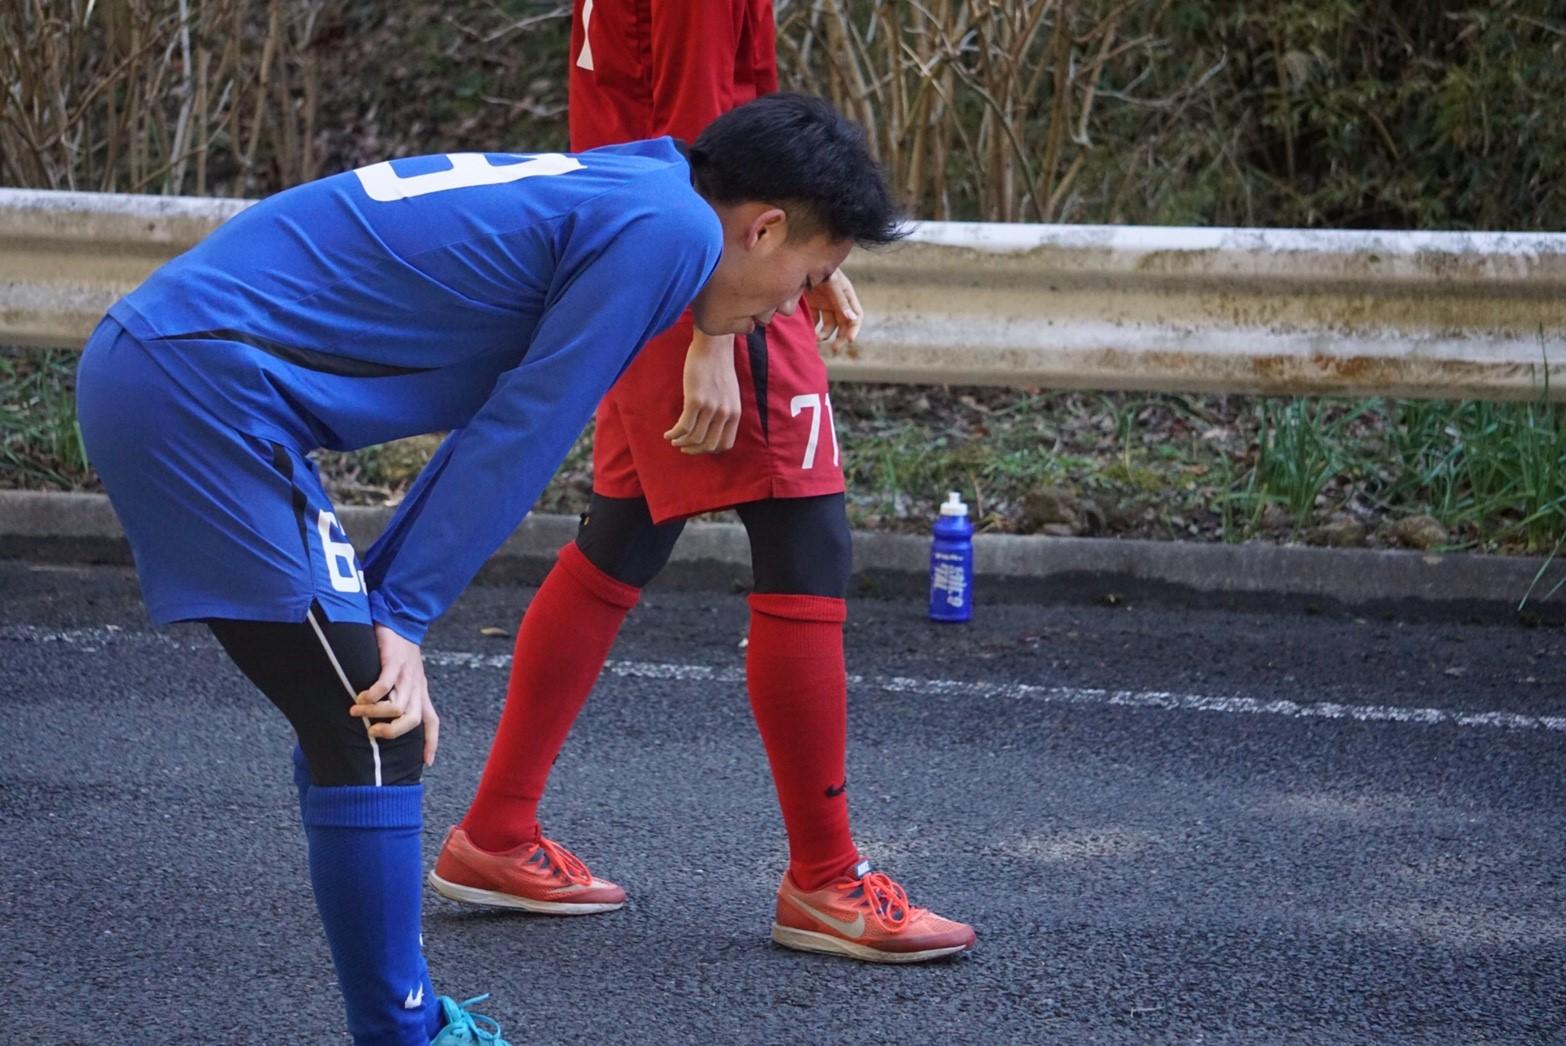 https://football.ku-sports.jp/blog/photoreport/20190220202451.jpg